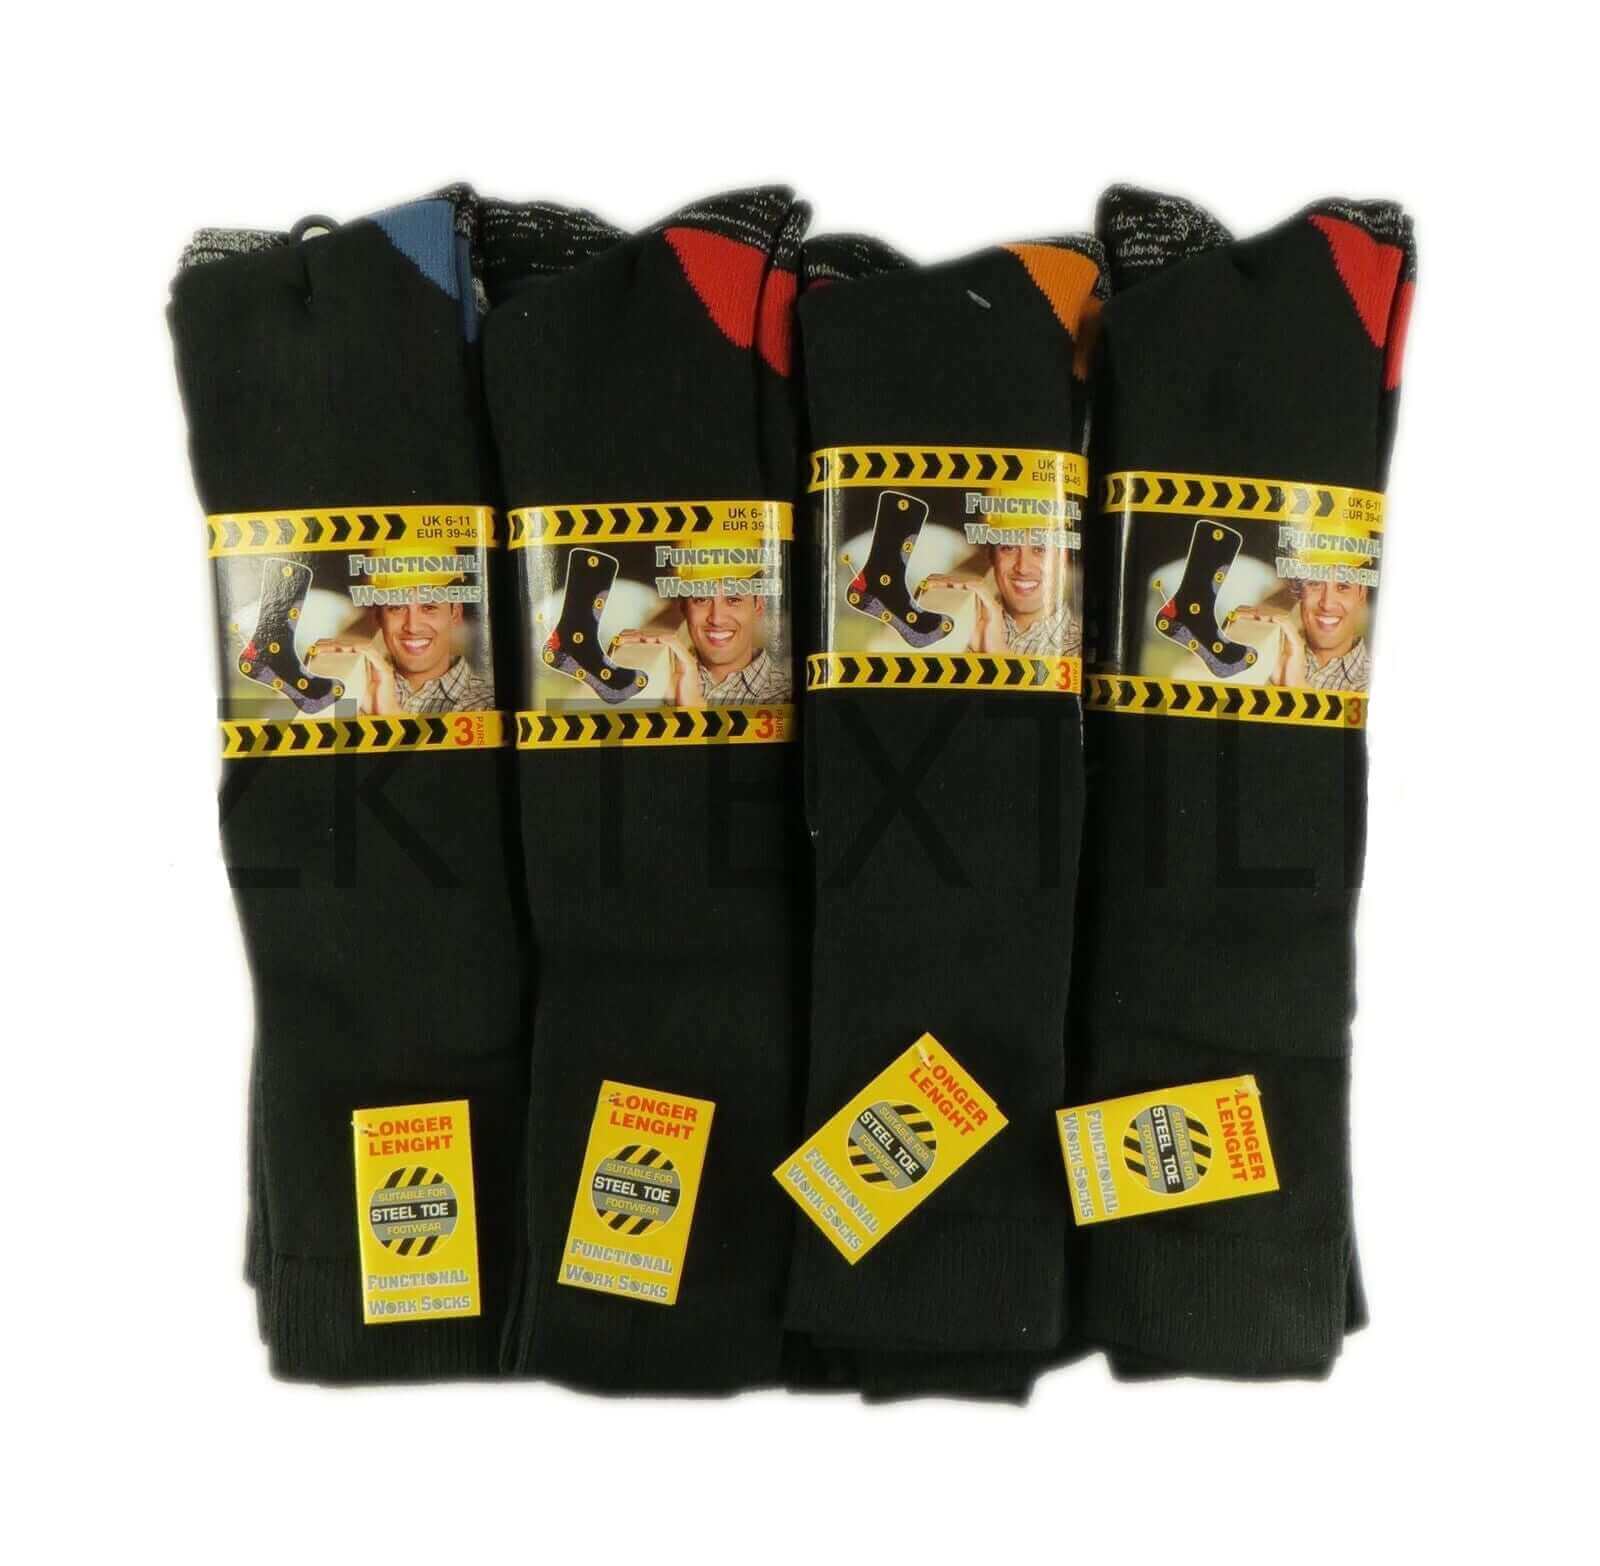 6 Pairs Of Long Men's Functional Work Socks, Knee Length Work Boot Socks. Buy now for £10.00. A Socks by Sock Stack. 6-11, assorted, athletics, black, black socks, boot, boot socks, boys socks, comfortable, cosy, cotton, dress socks, elastane, hiking, kne